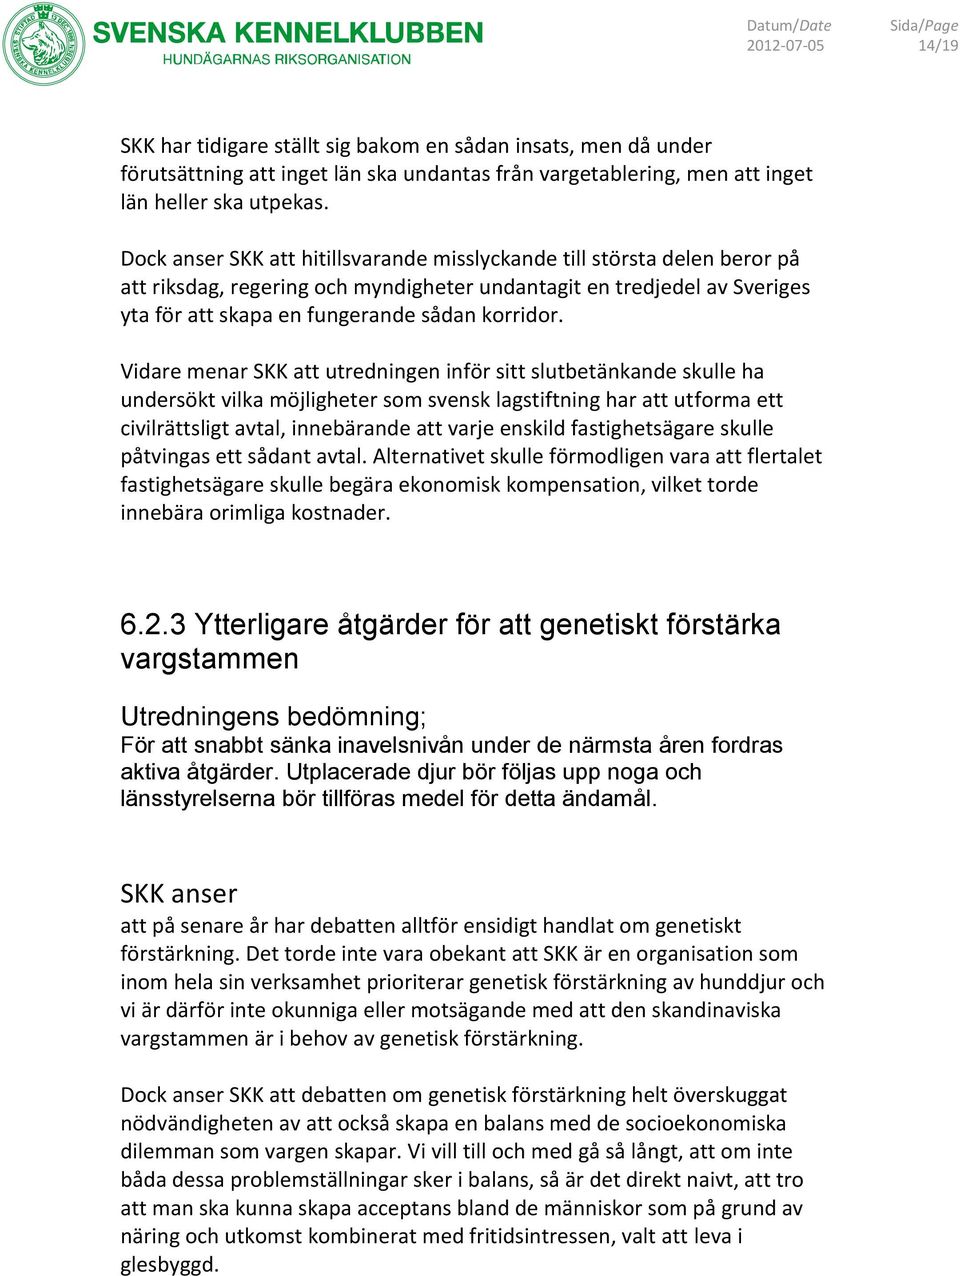 Vidare menar SKK att utredningen inför sitt slutbetänkande skulle ha undersökt vilka möjligheter sm svensk lagstiftning har att utfrma ett civilrättsligt avtal, innebärande att varje enskild